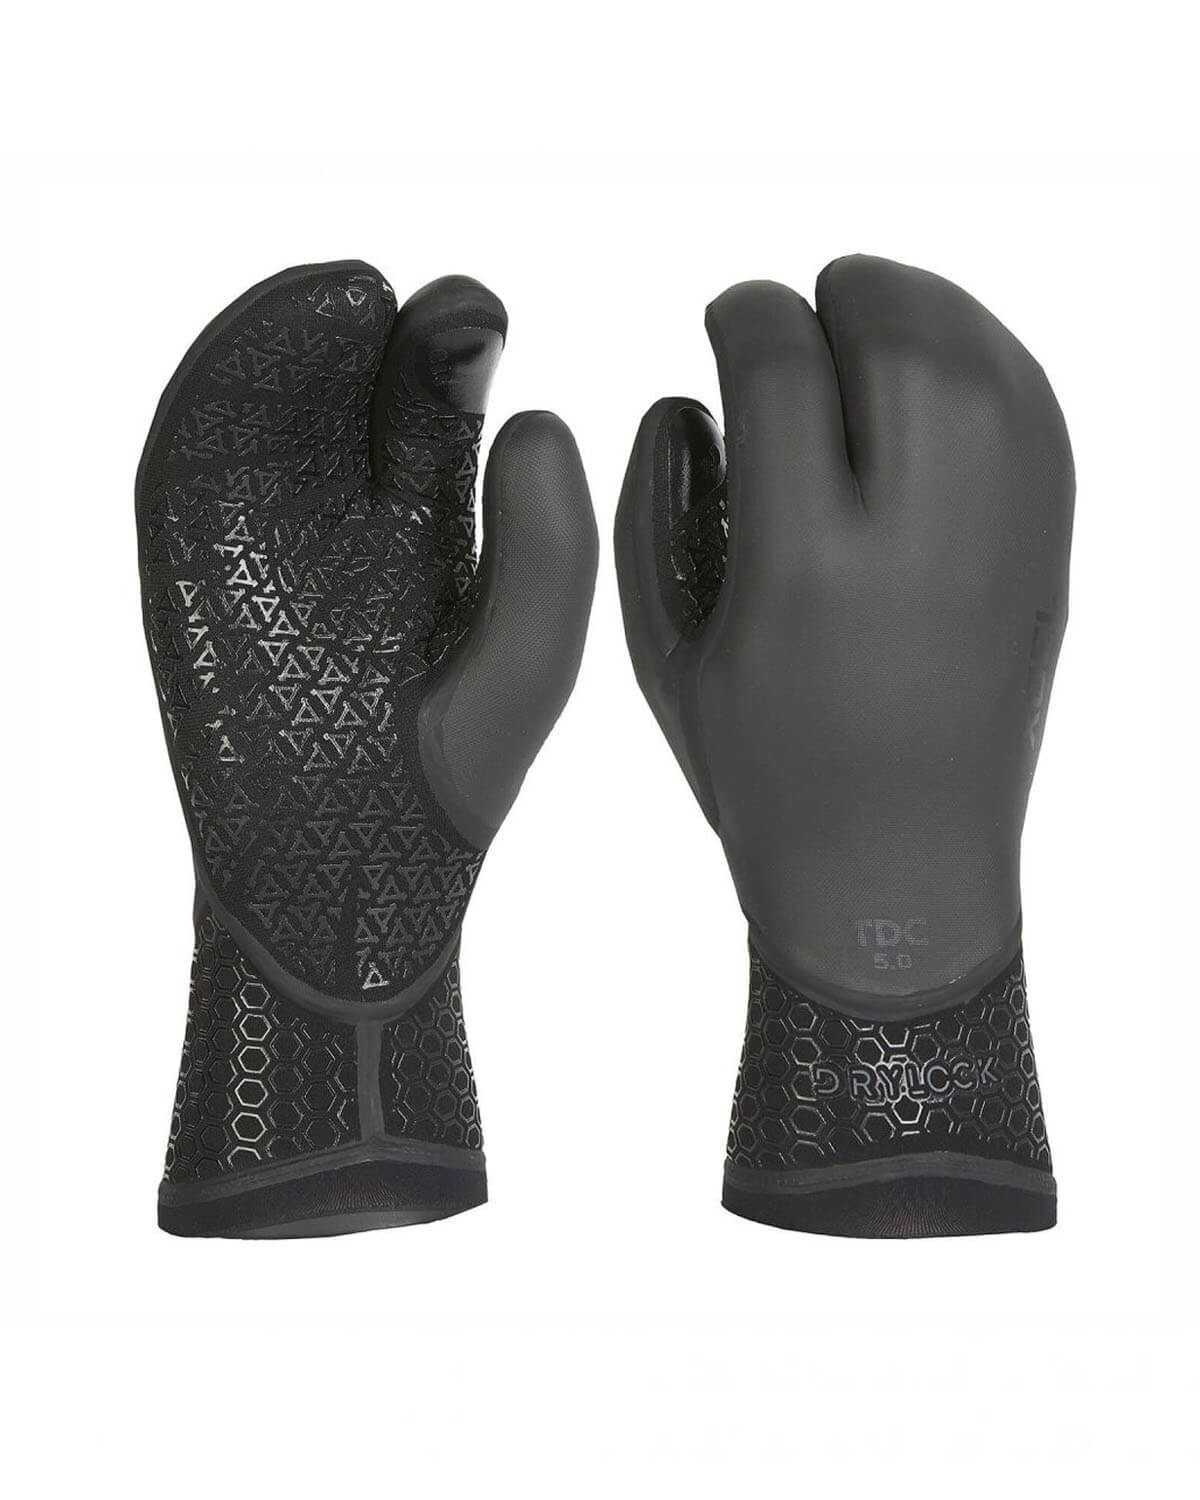 5mm XCEL DRYLOCK 3-Finger Gloves